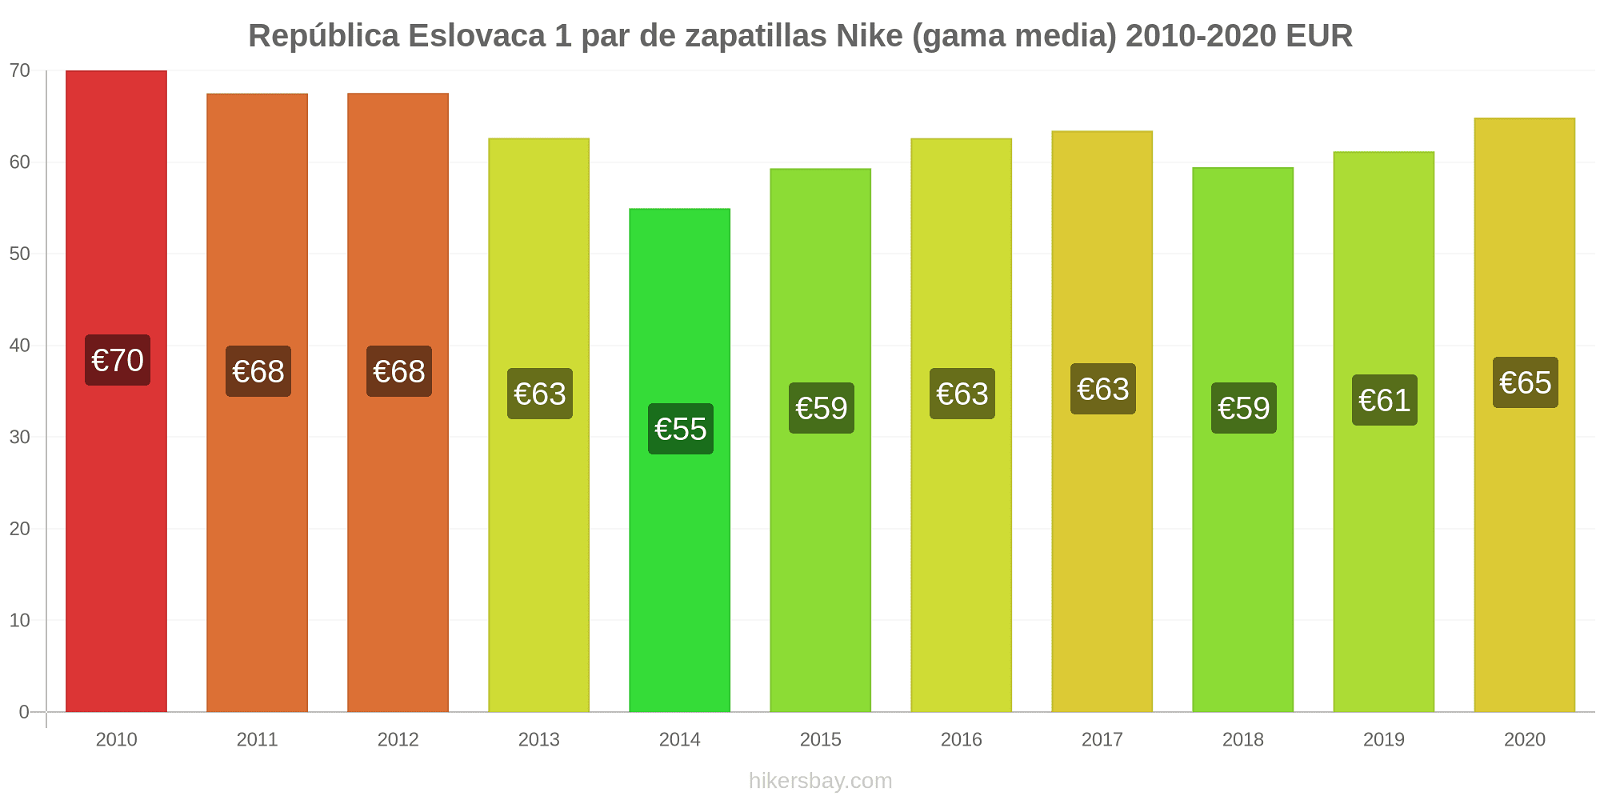 República Eslovaca cambios de precios 1 par de zapatillas Nike (gama media) hikersbay.com